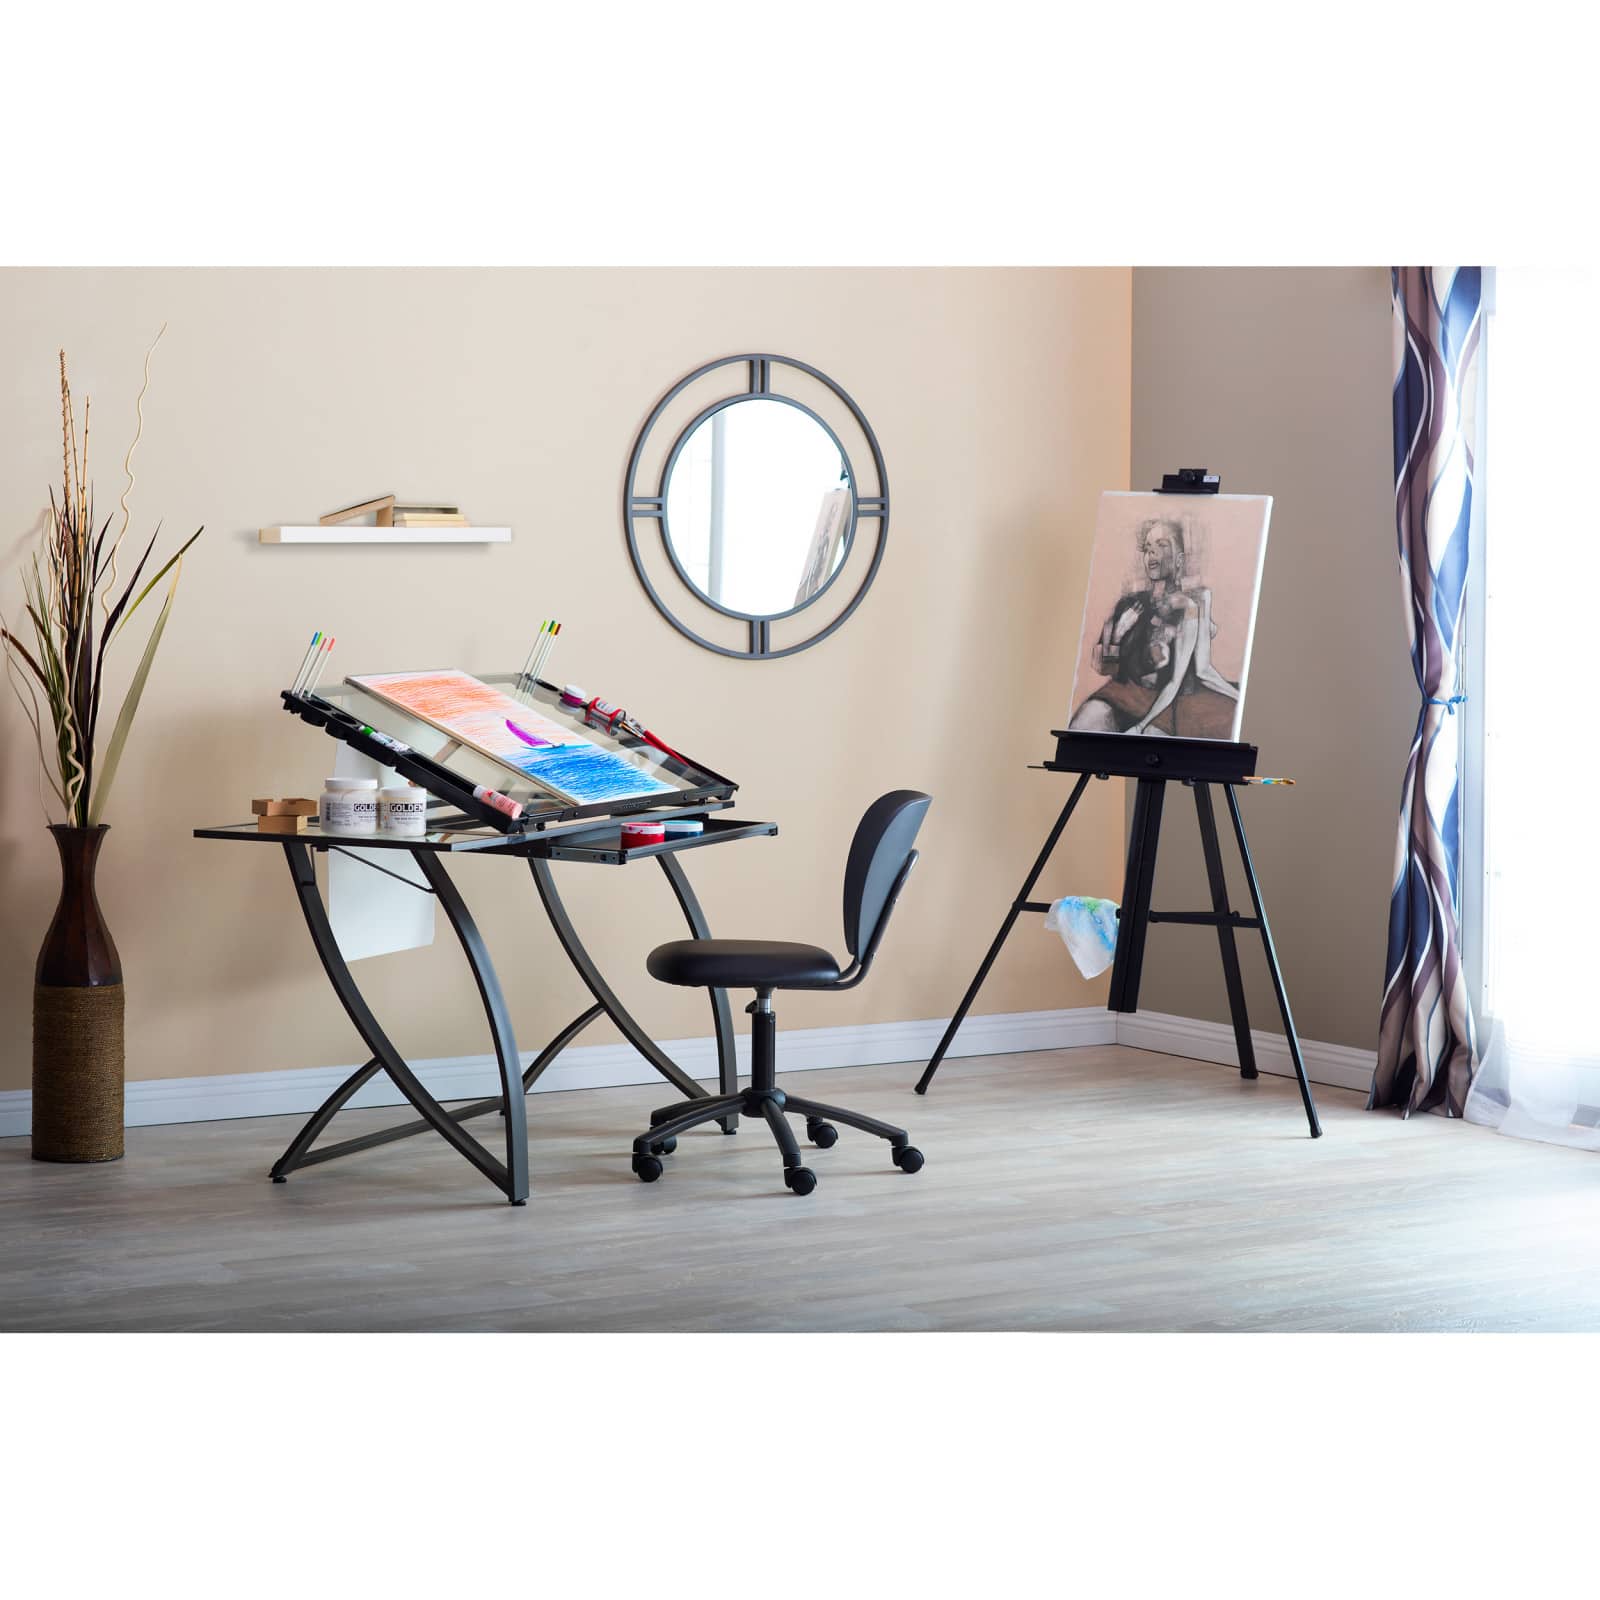 Studio Designs Futura Luxe Craft Table